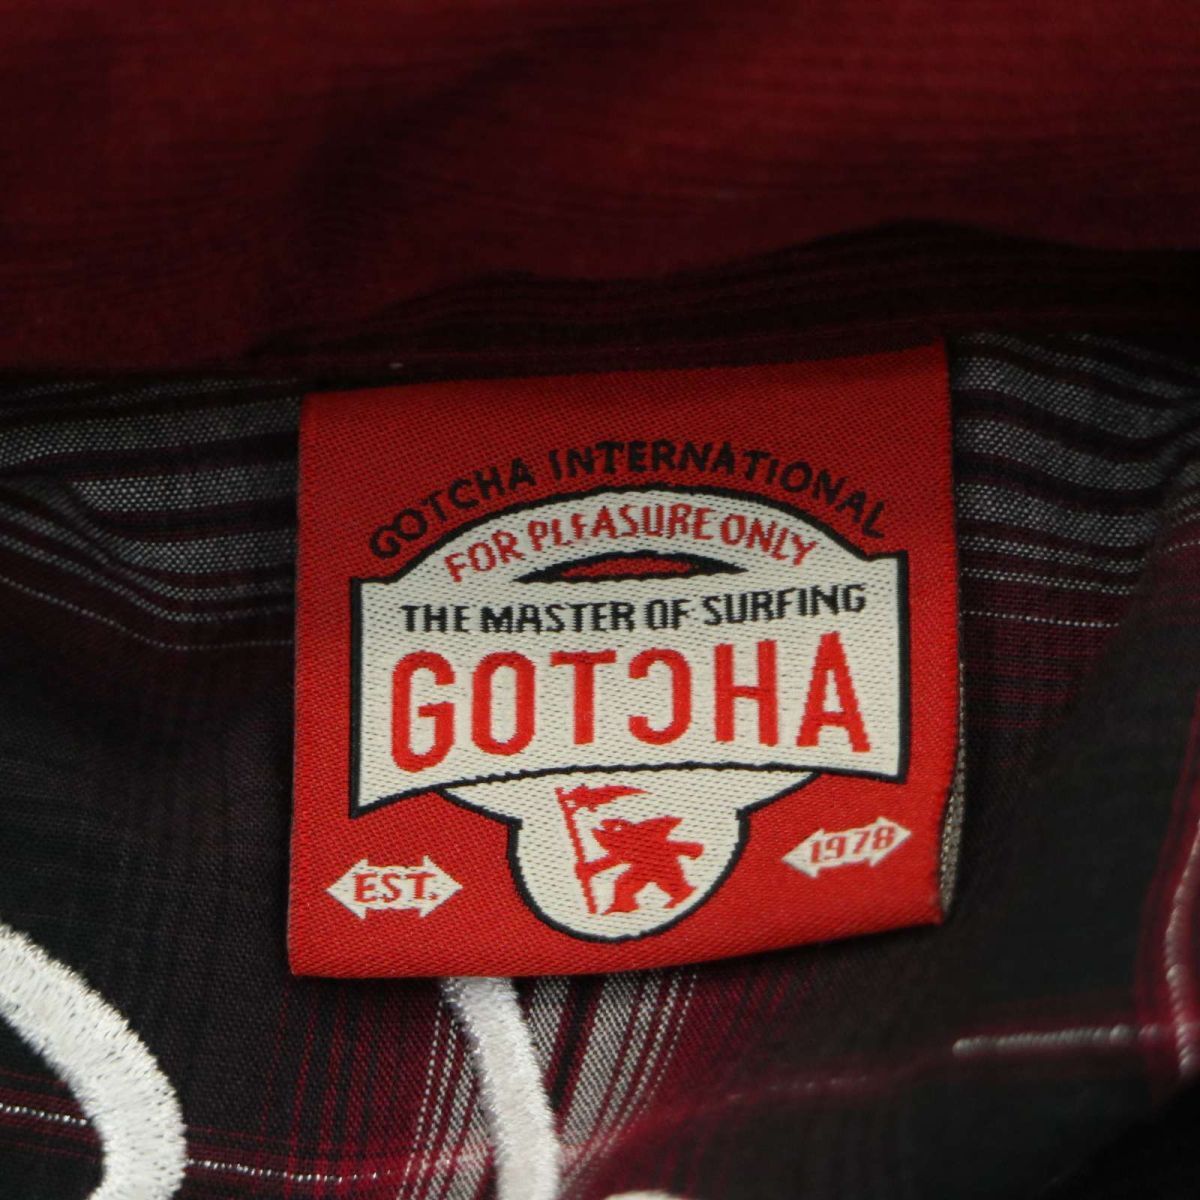 GOTCHA Gotcha через год большой Logo вышивка * капот место хранения длинный рукав Work проверка рубашка Sz.S мужской Surf A4T03005_3#C